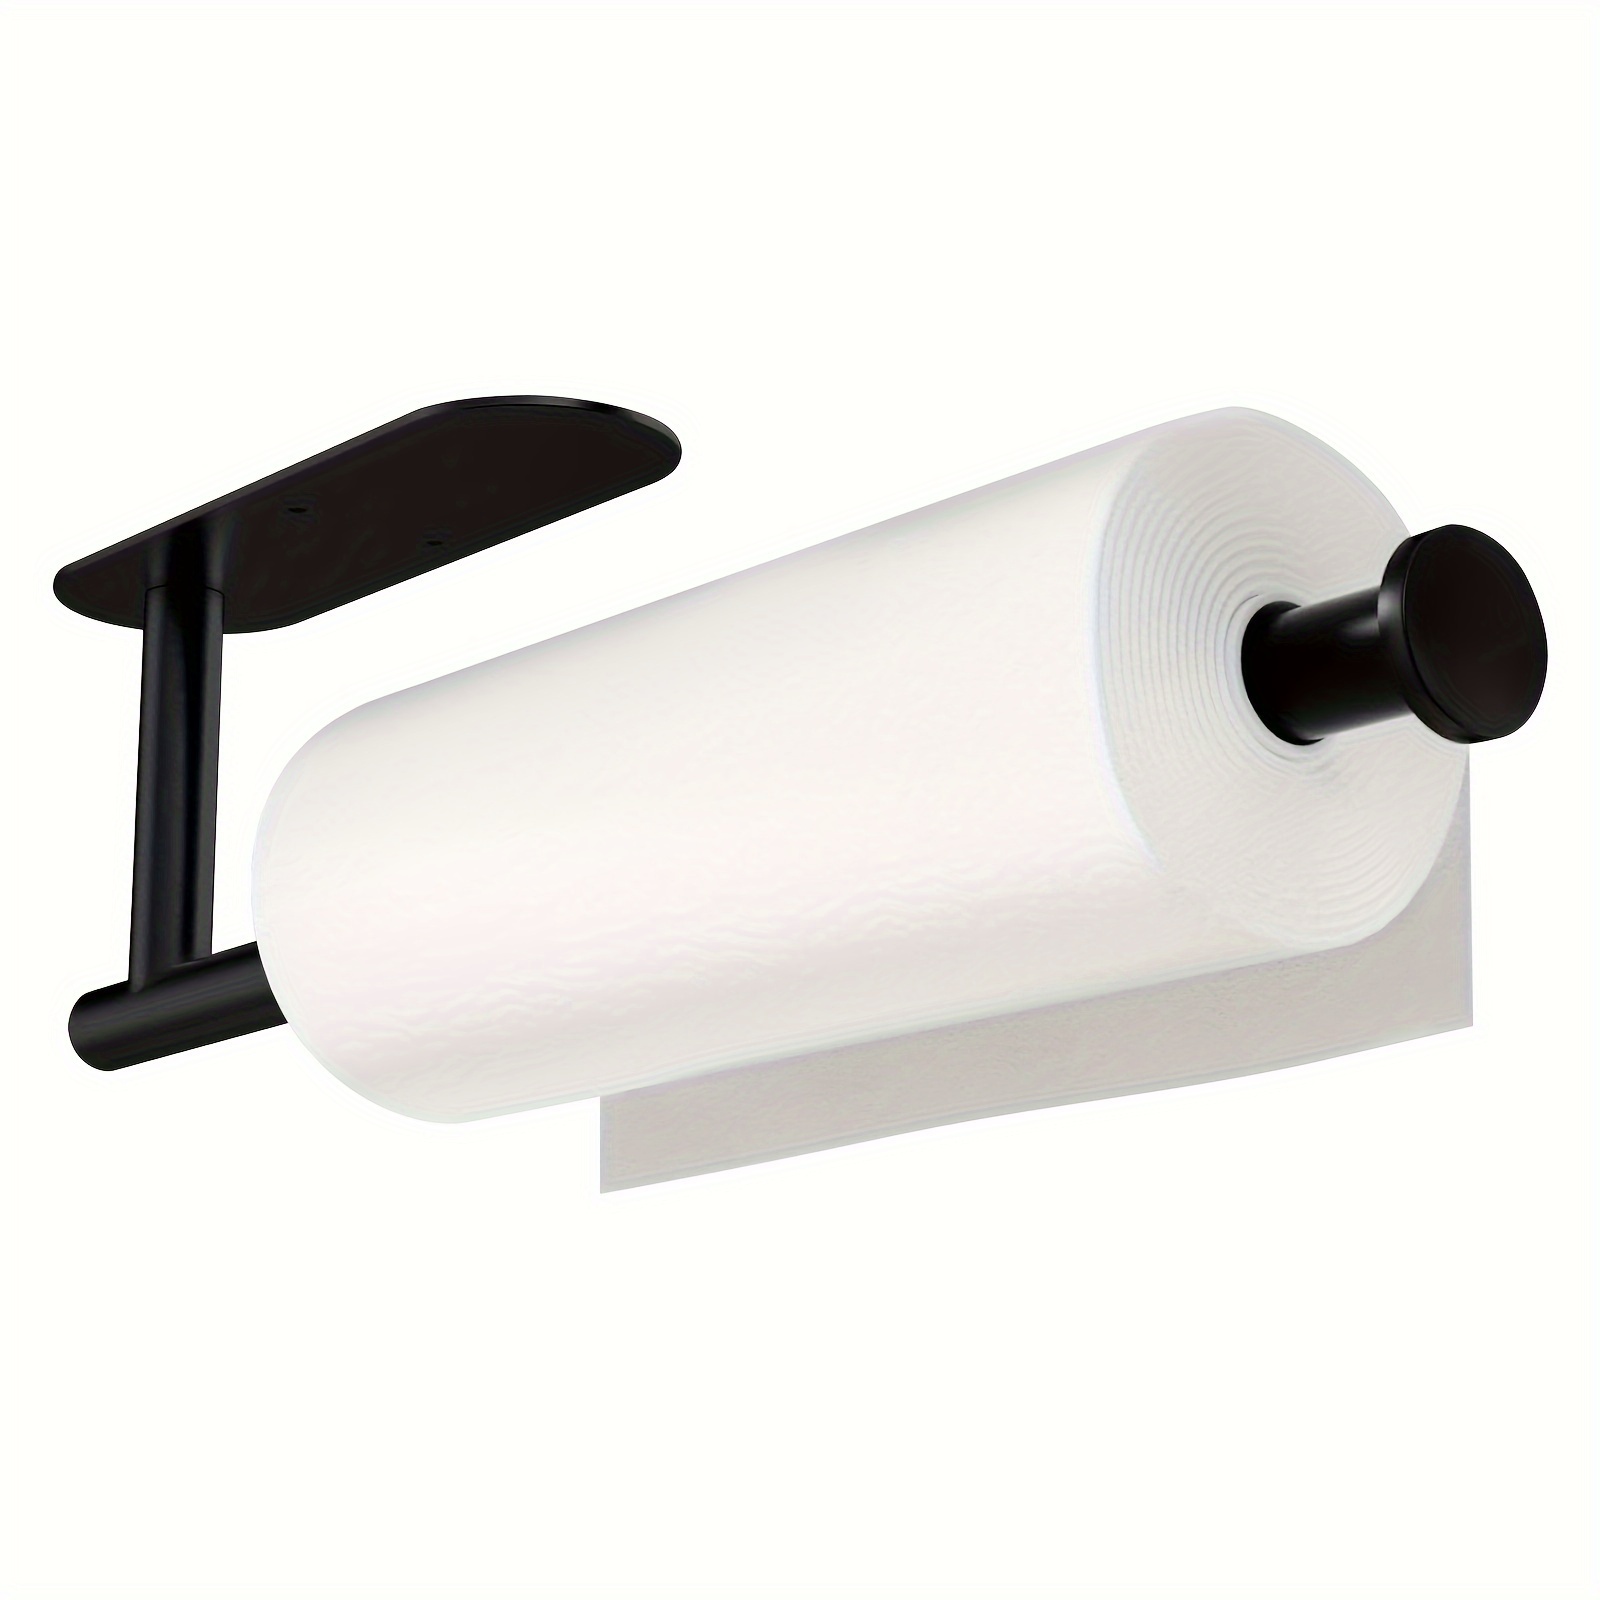 Soporte de papel higiénico negro mate, soporte de rollo de papel higiénico  giratorio de doble poste para baño, cocina Rv, SUS304 de acero inoxidable